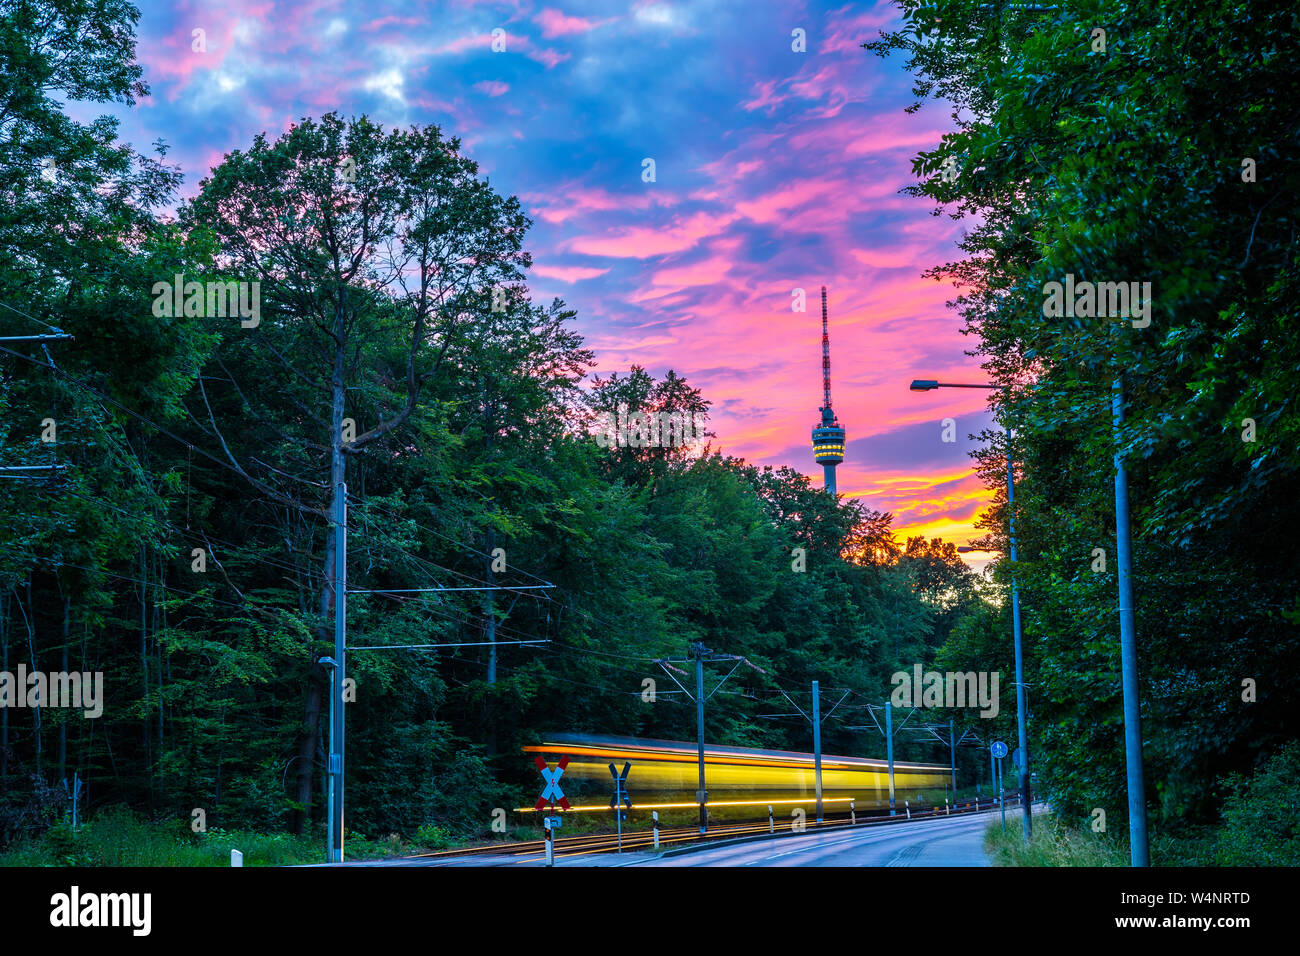 Allemagne, Stuttgart city tour de télévision en vert forêt avec ciel rougeoyant après le coucher du soleil à partir de la rue avec trafic tramway dans la belle nature paysage Banque D'Images